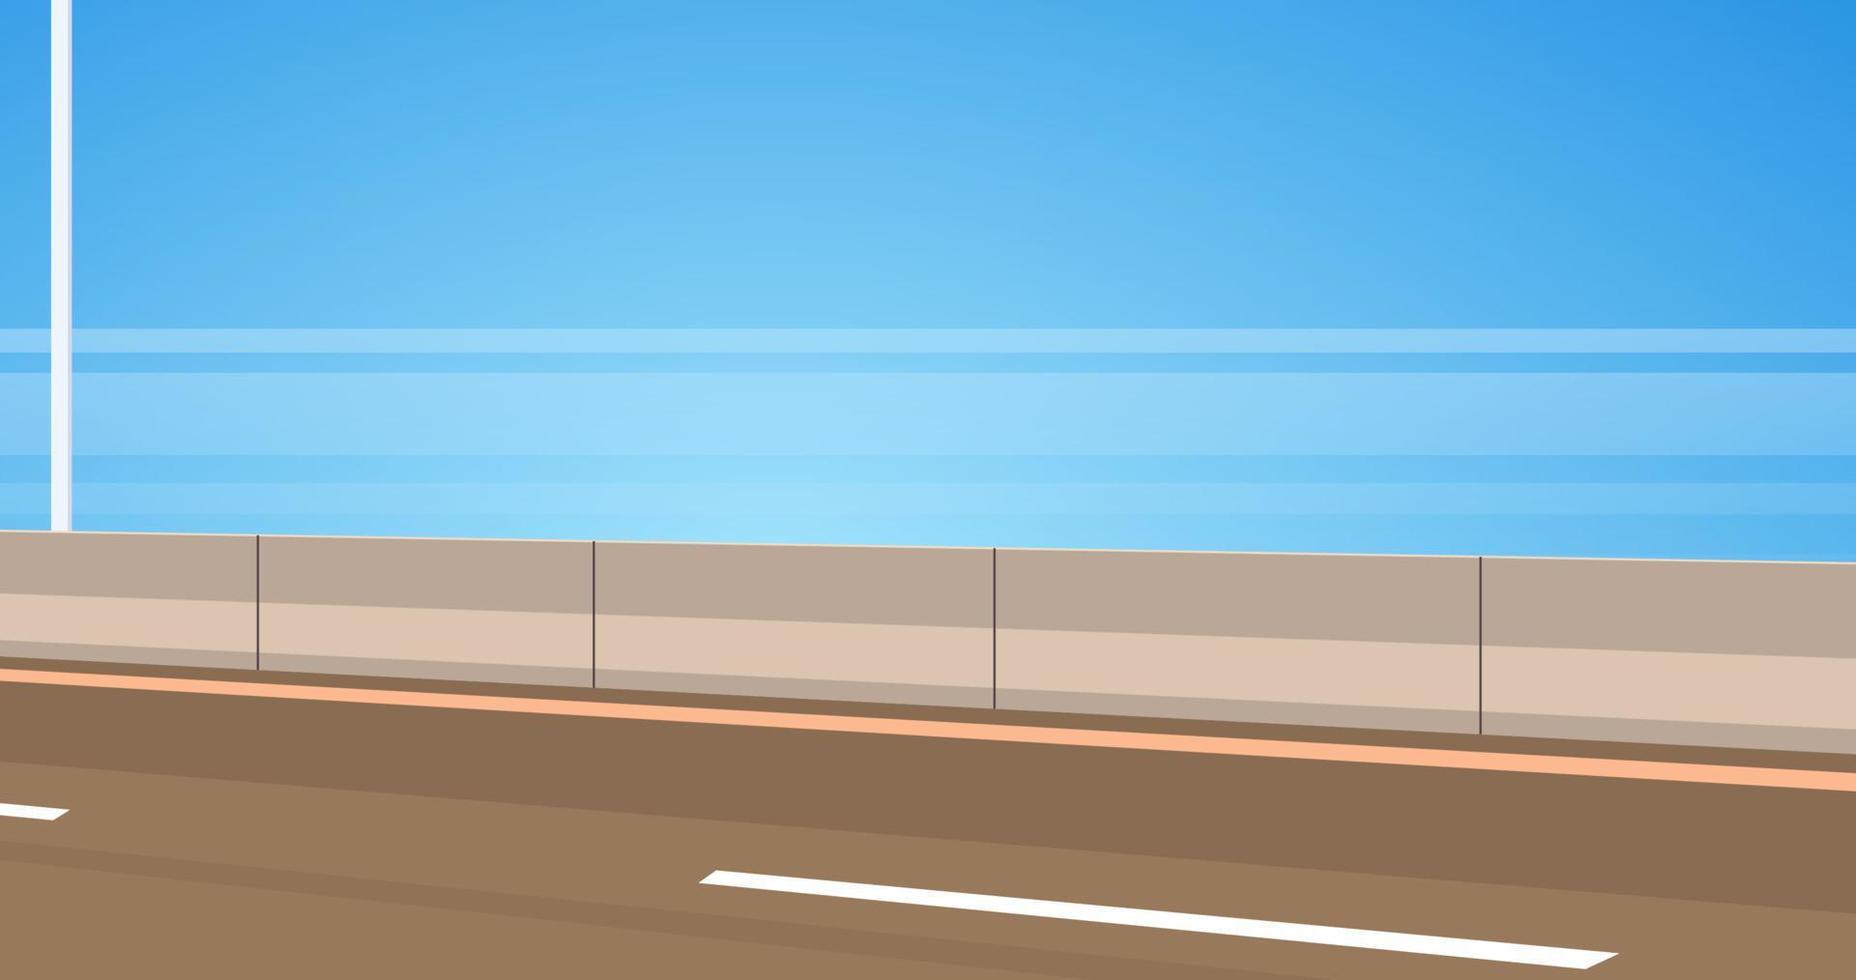 estrada de asfalto da estrada e ilustração em vetor plano de design ao ar livre de estrada de cidade de estilo moderno.